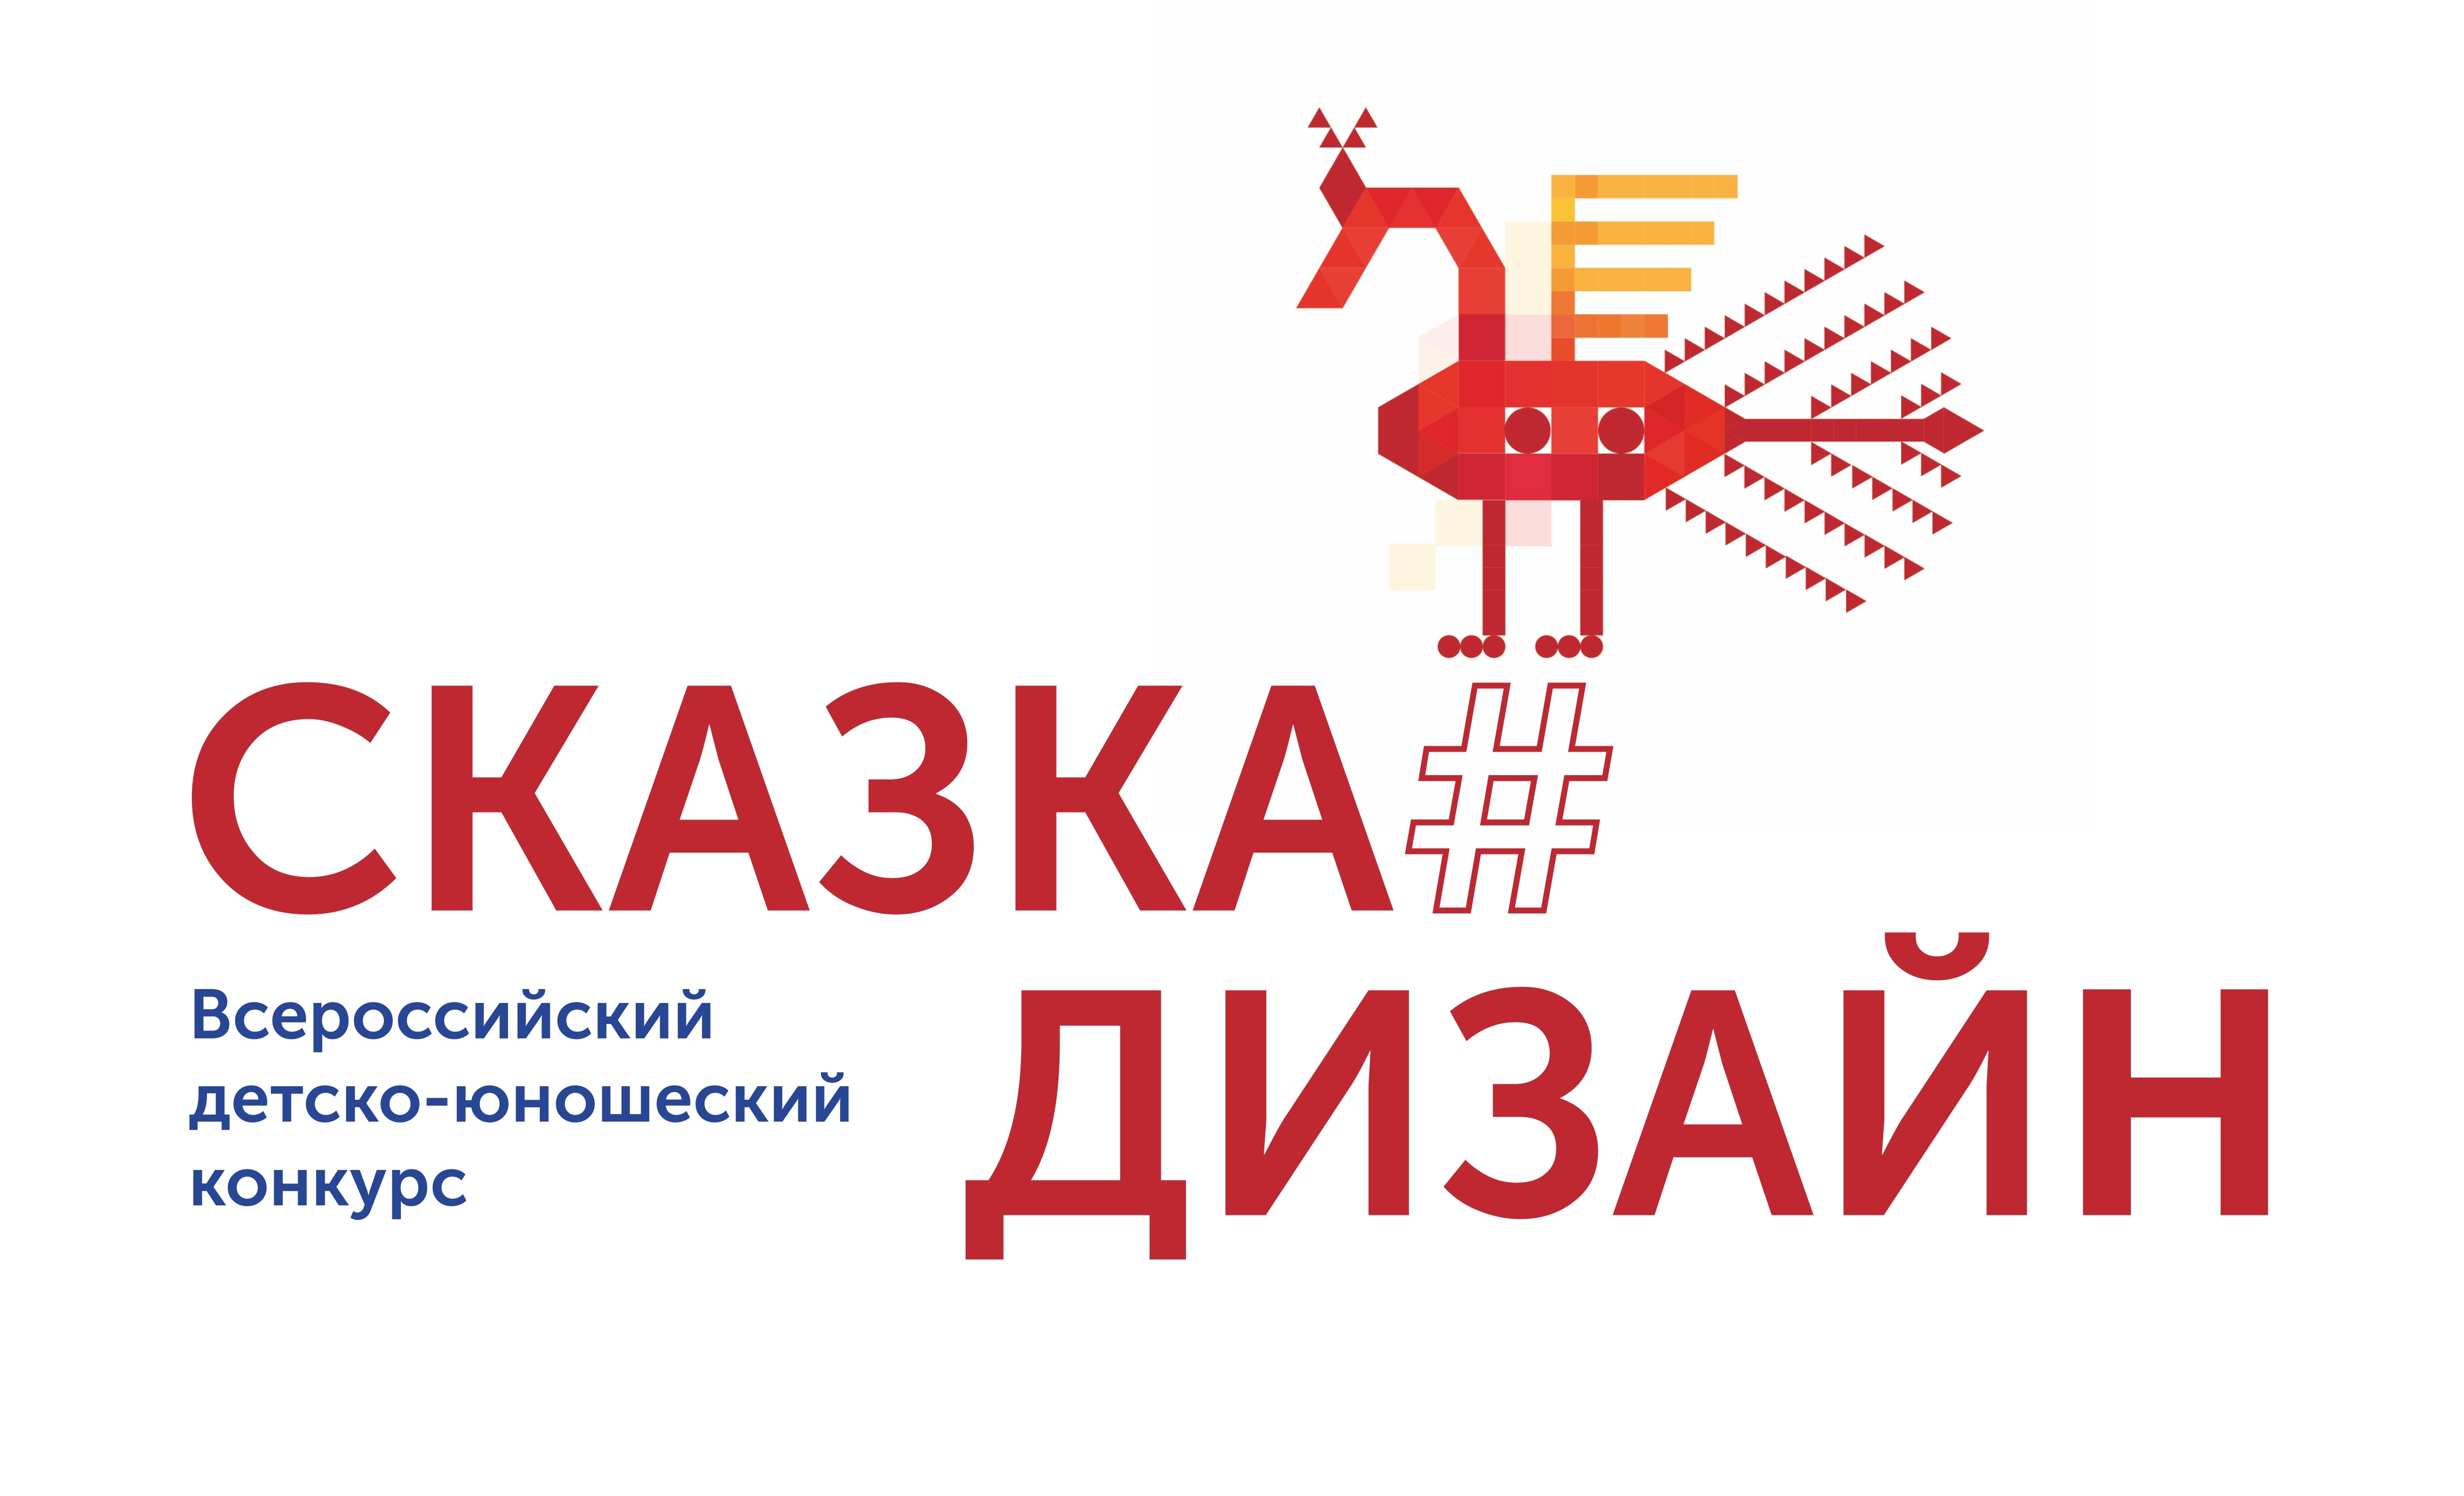 Skazka logo